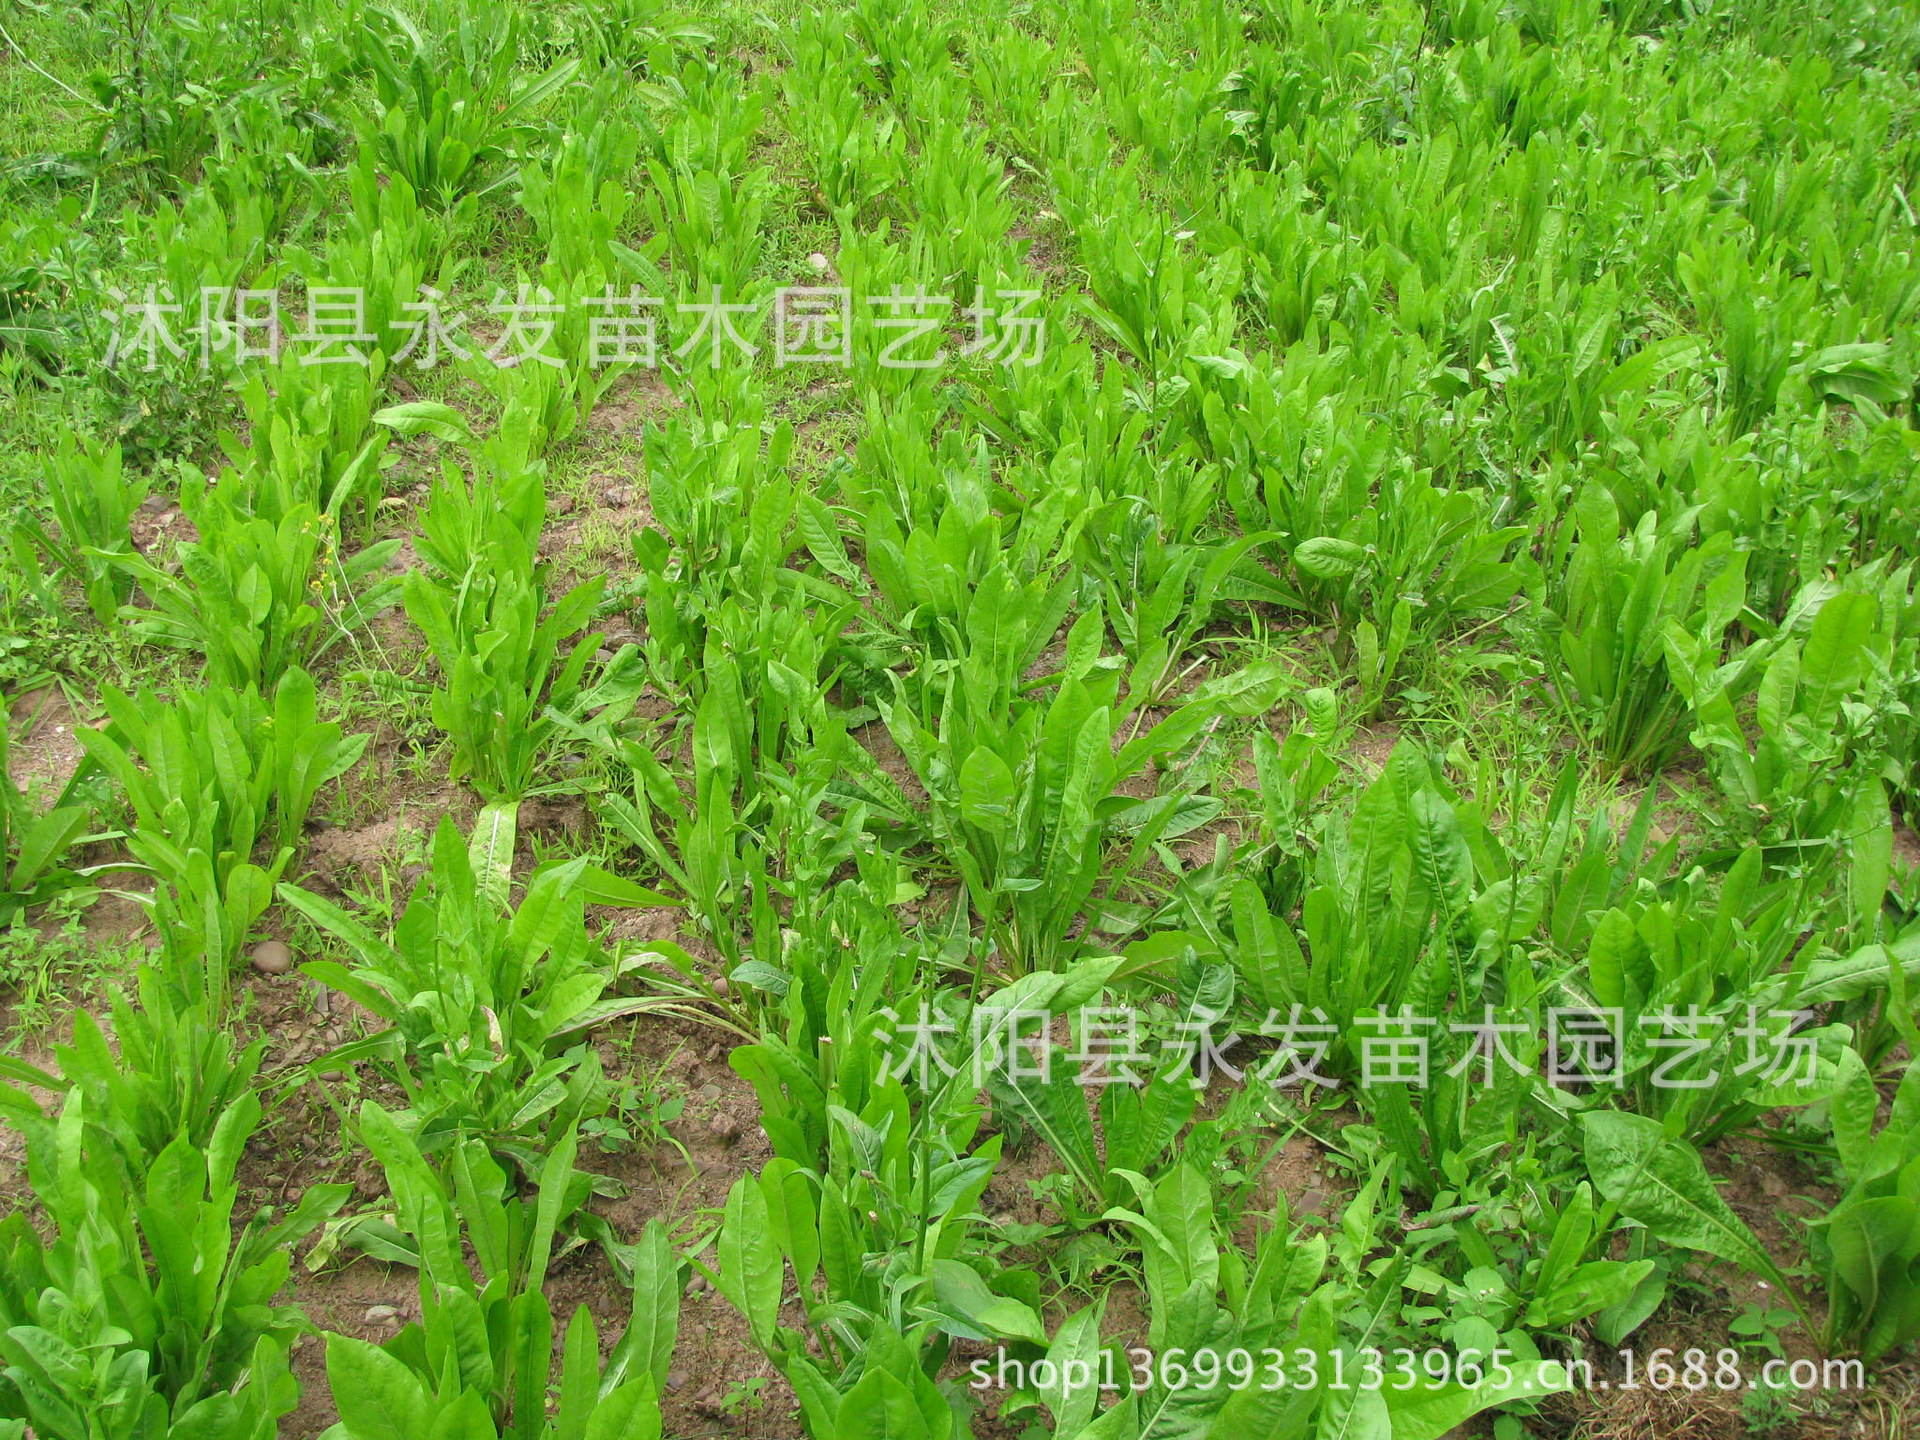 供应优质将军菊苣牧草种子 菊苣种子 益丰菊苣产量大适口性好牧草